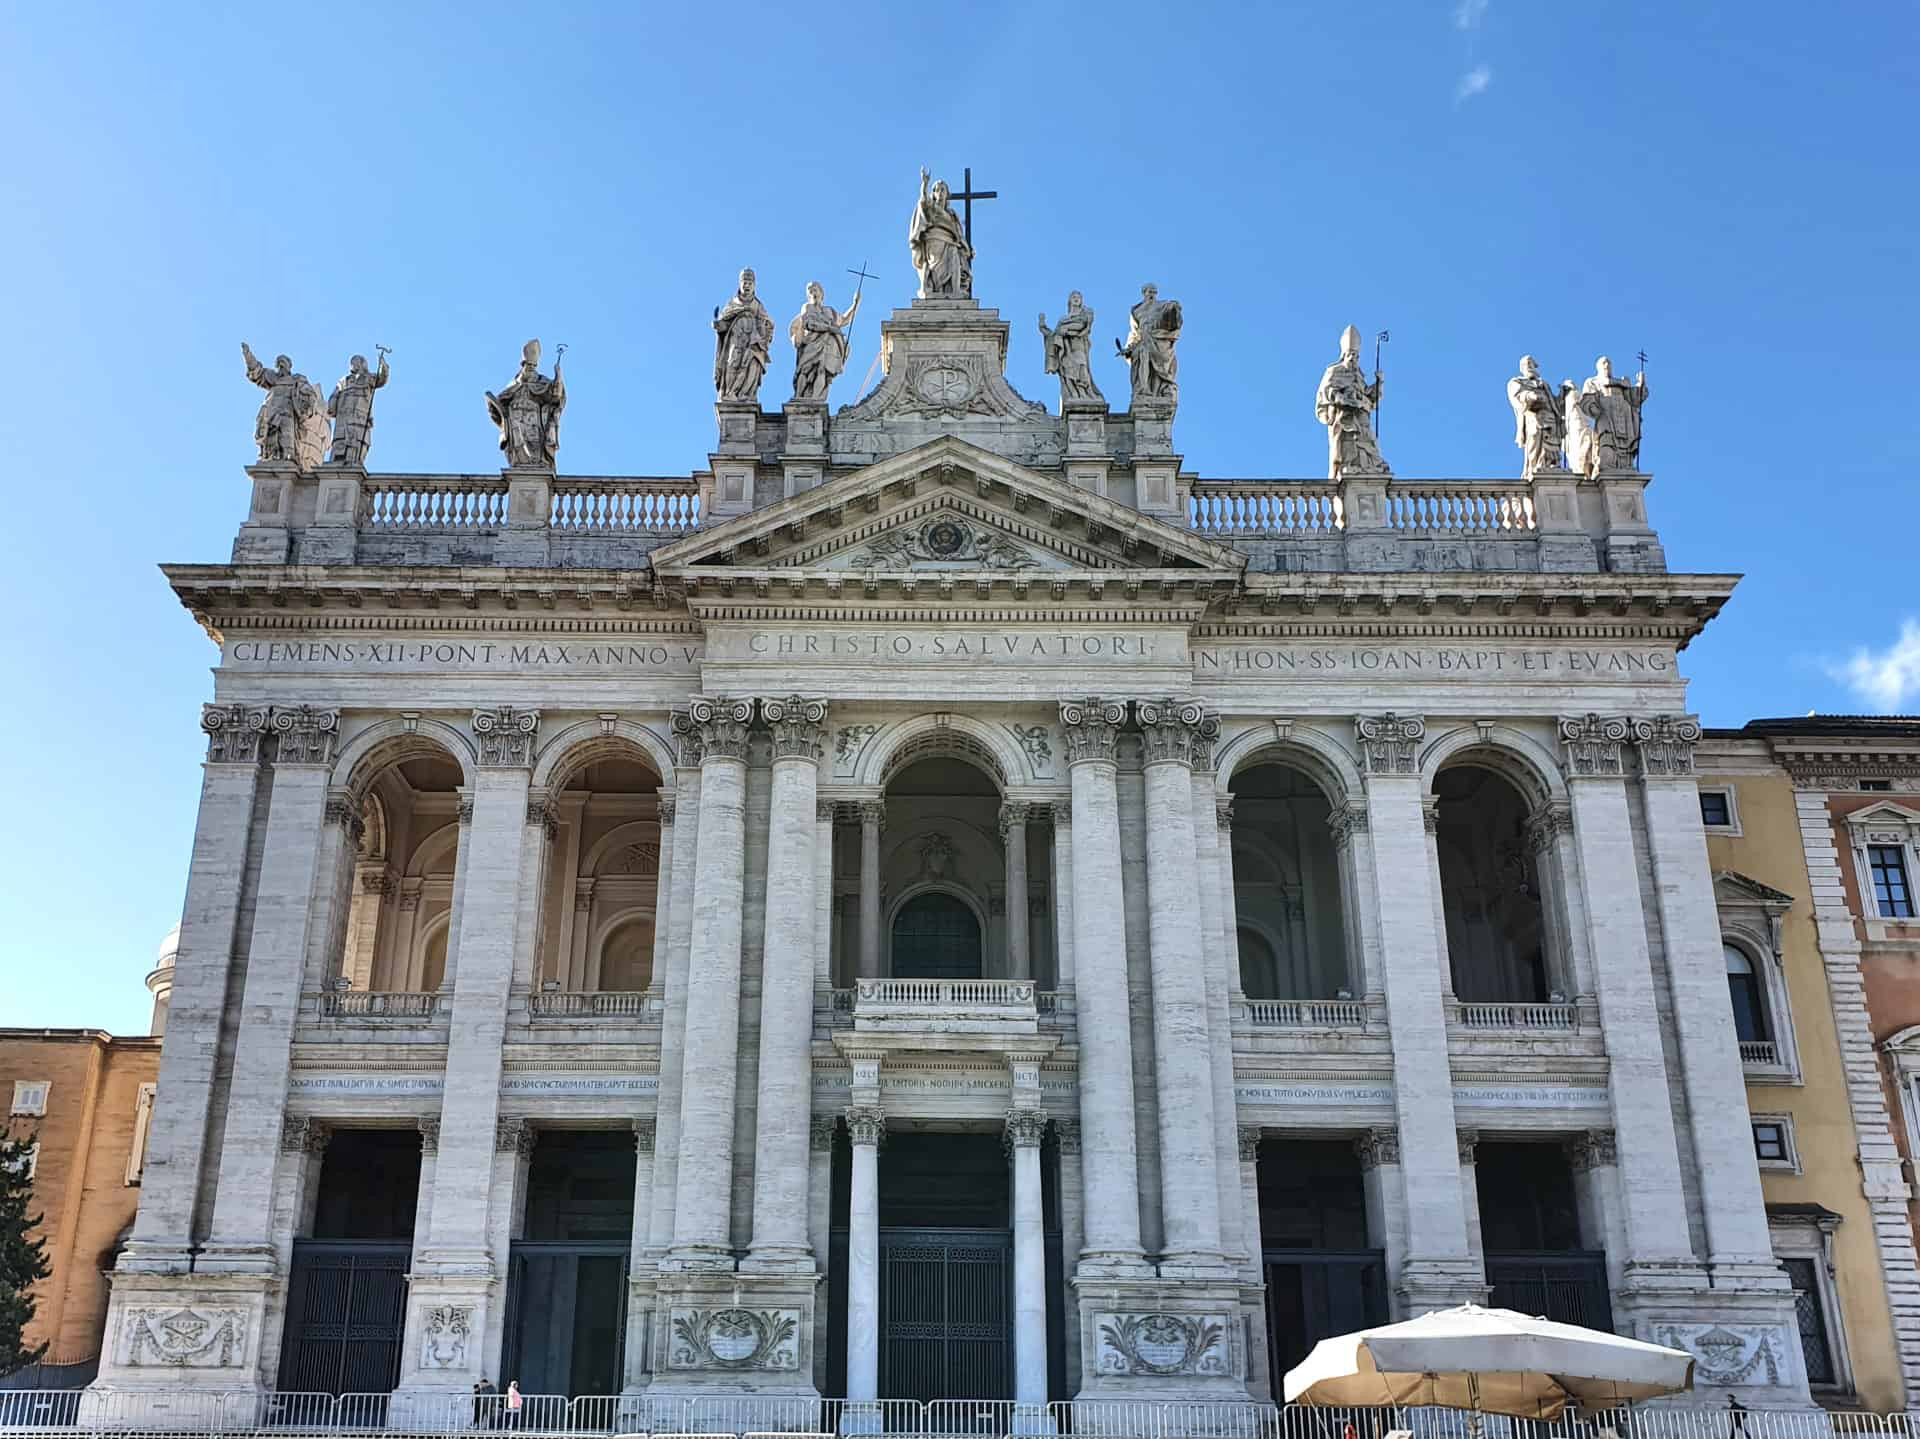 Visite a la Santa Inquisición en Roma  - Treasures of Rome 3